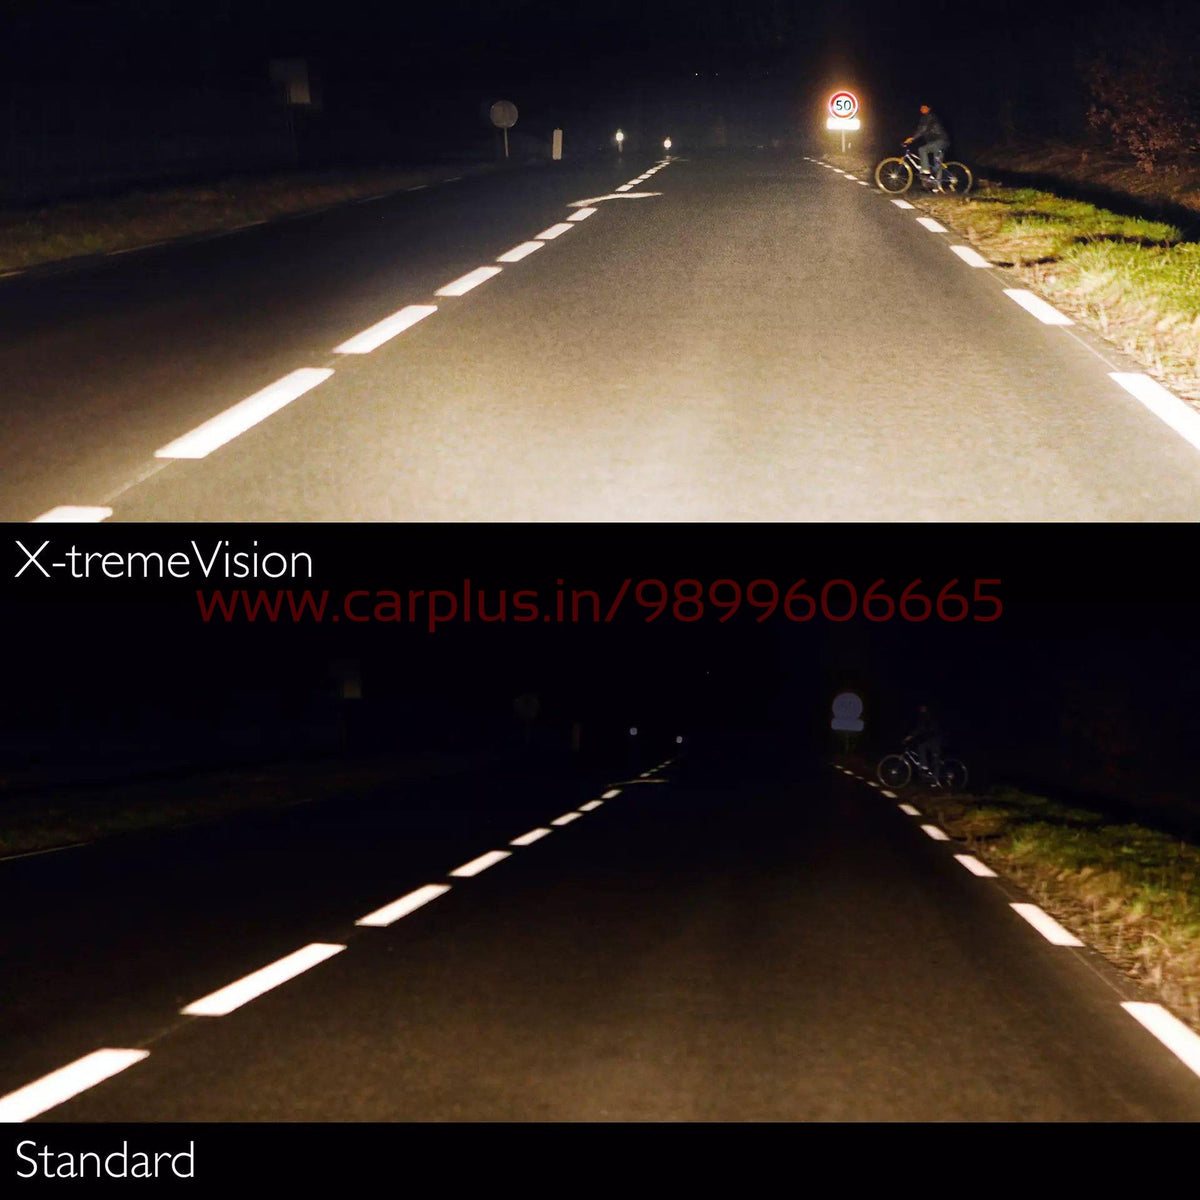 Philips H1 Xtreme Vision – CARPLUS